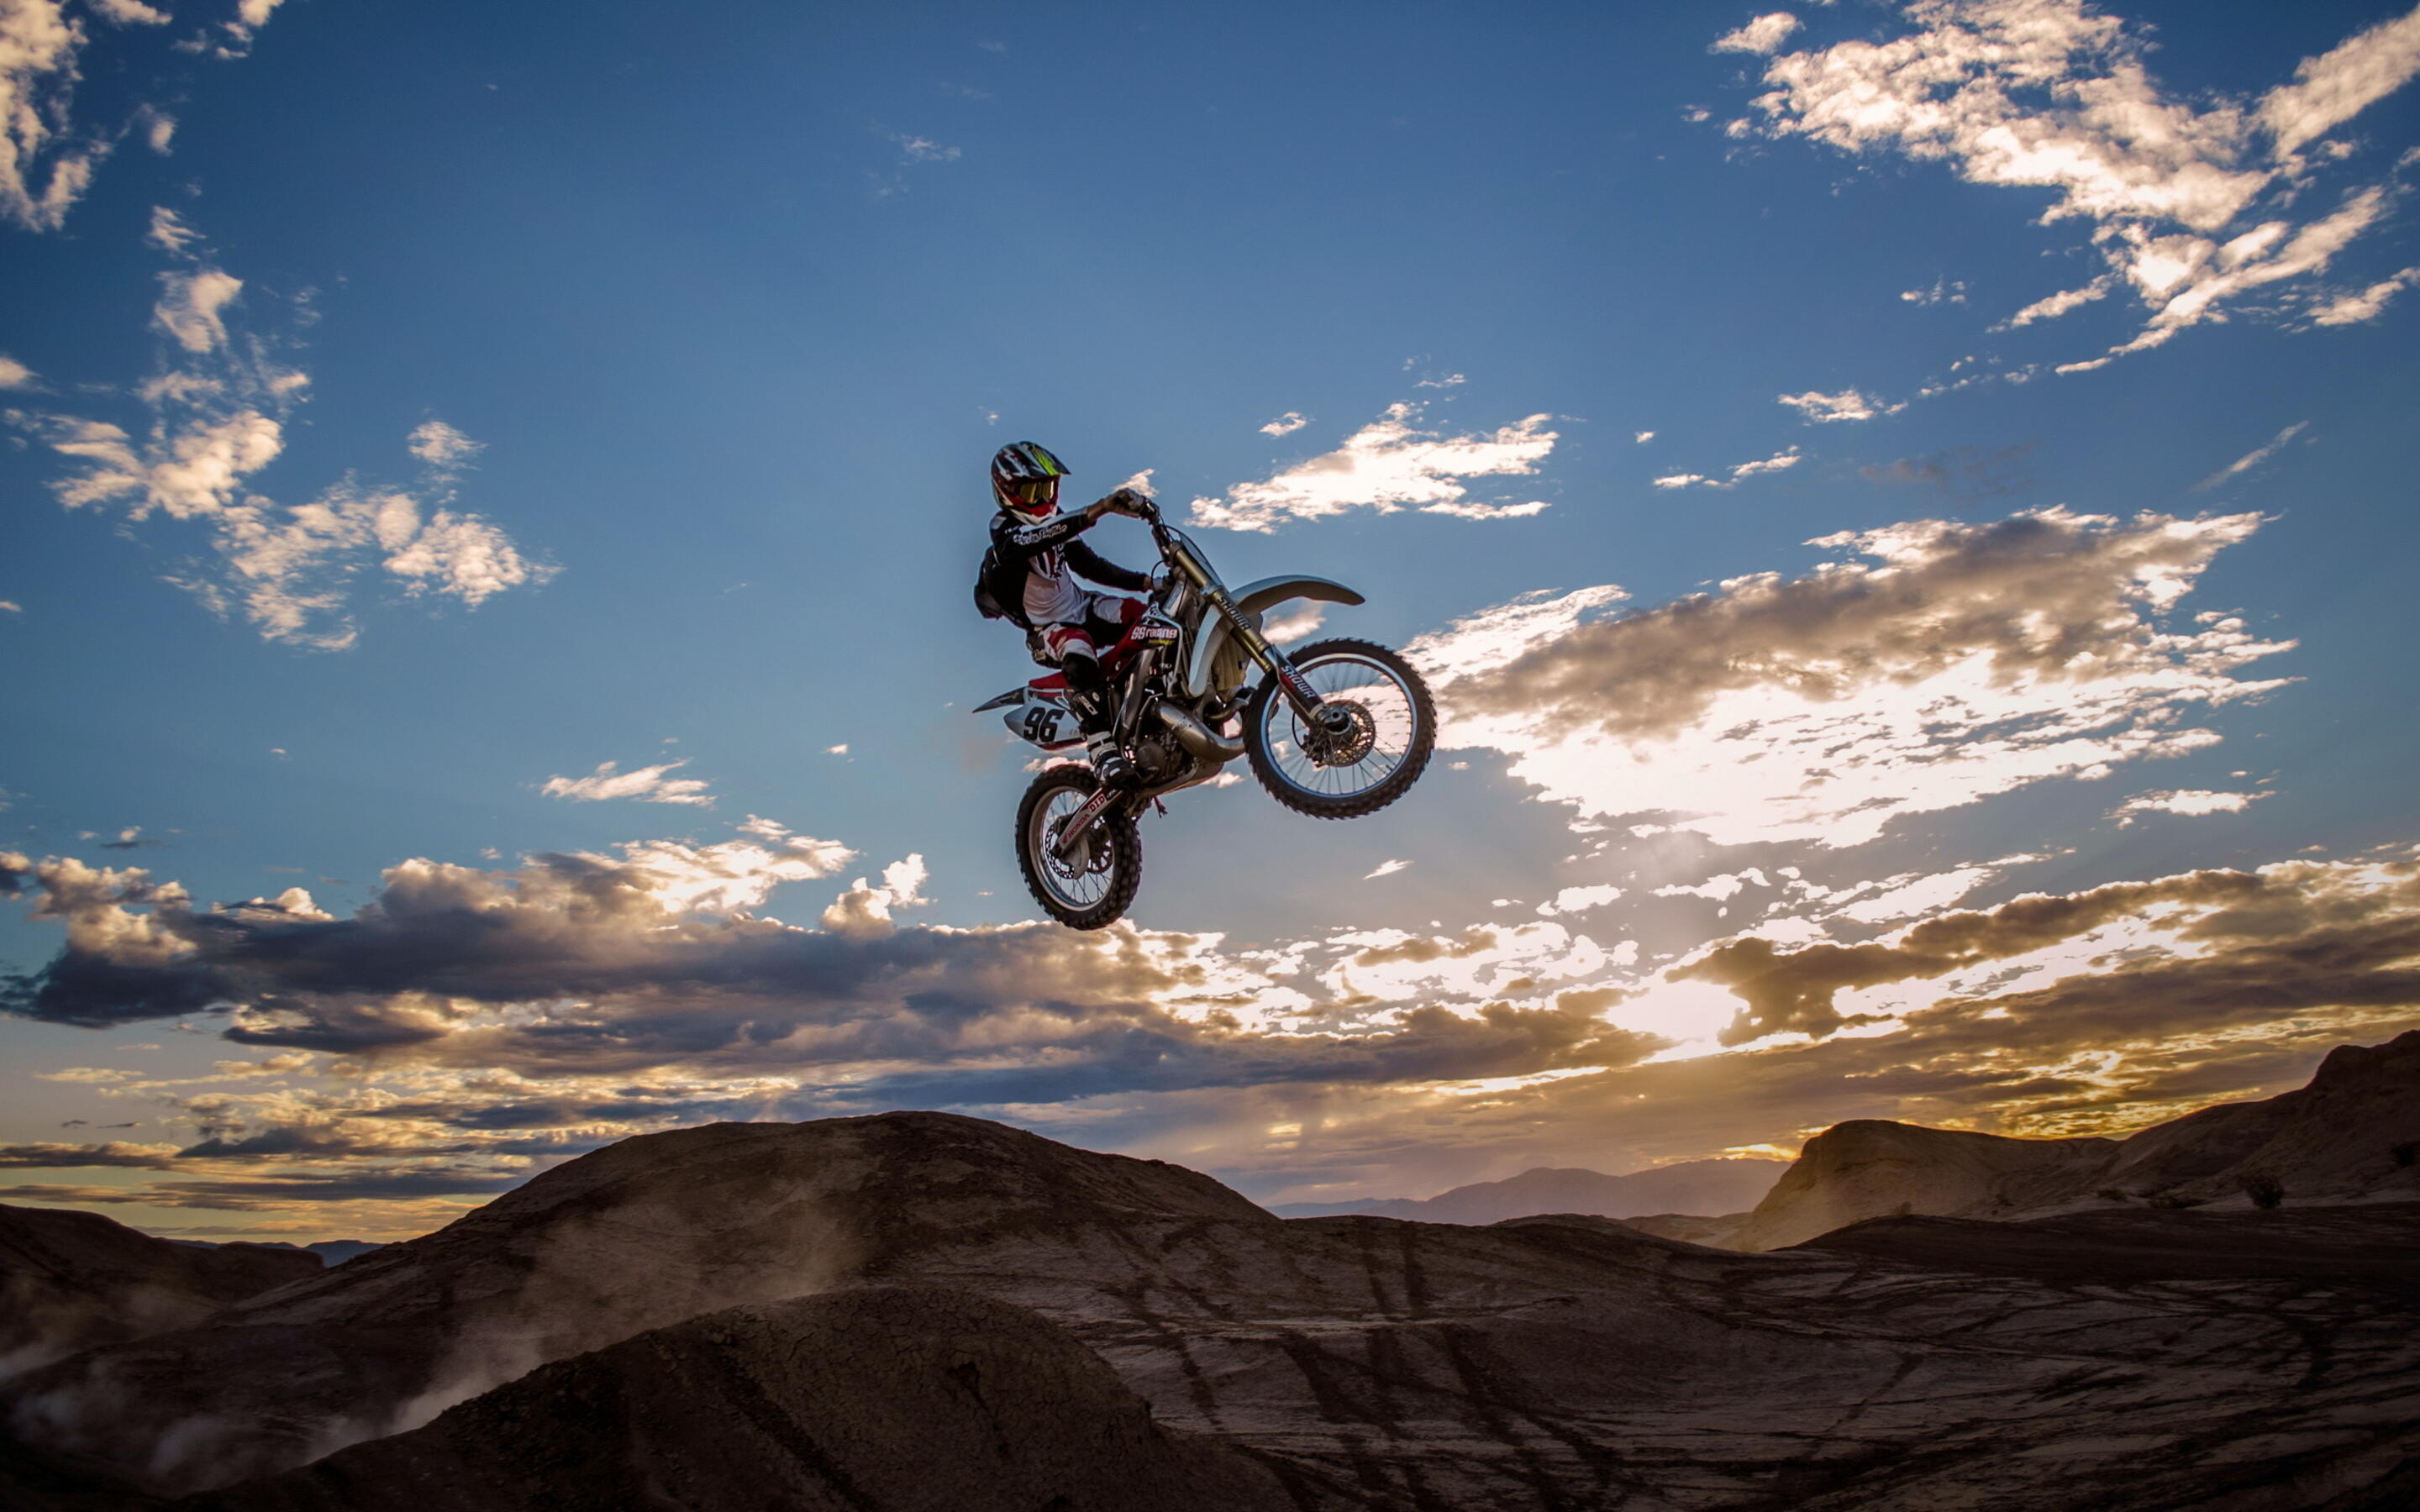 Stunt: Dirt bike stuntman, Enduro elements in the air. 2880x1800 HD Wallpaper.